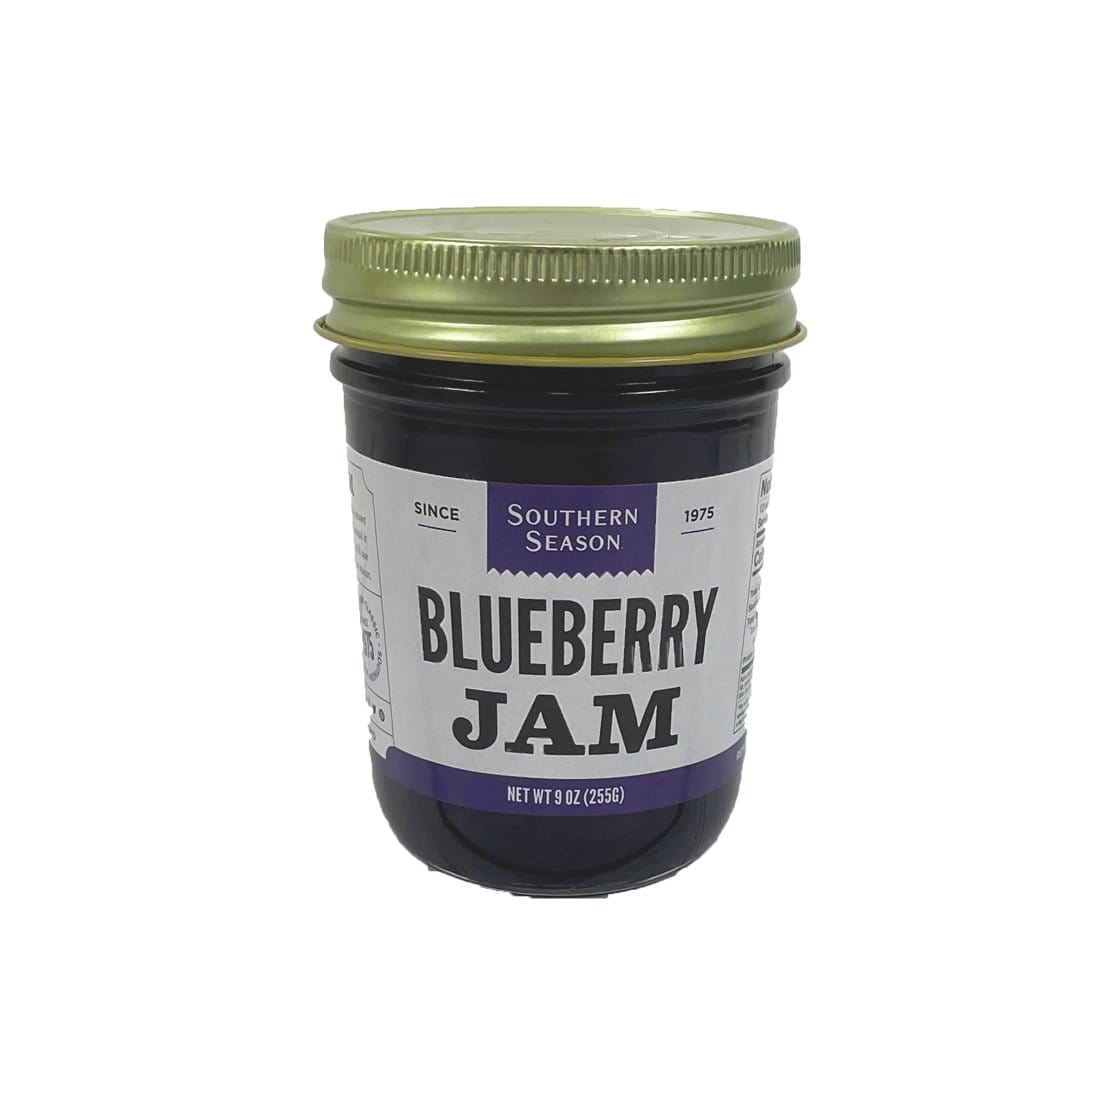 Southern Season Southern Season Blueberry Jam 9 oz